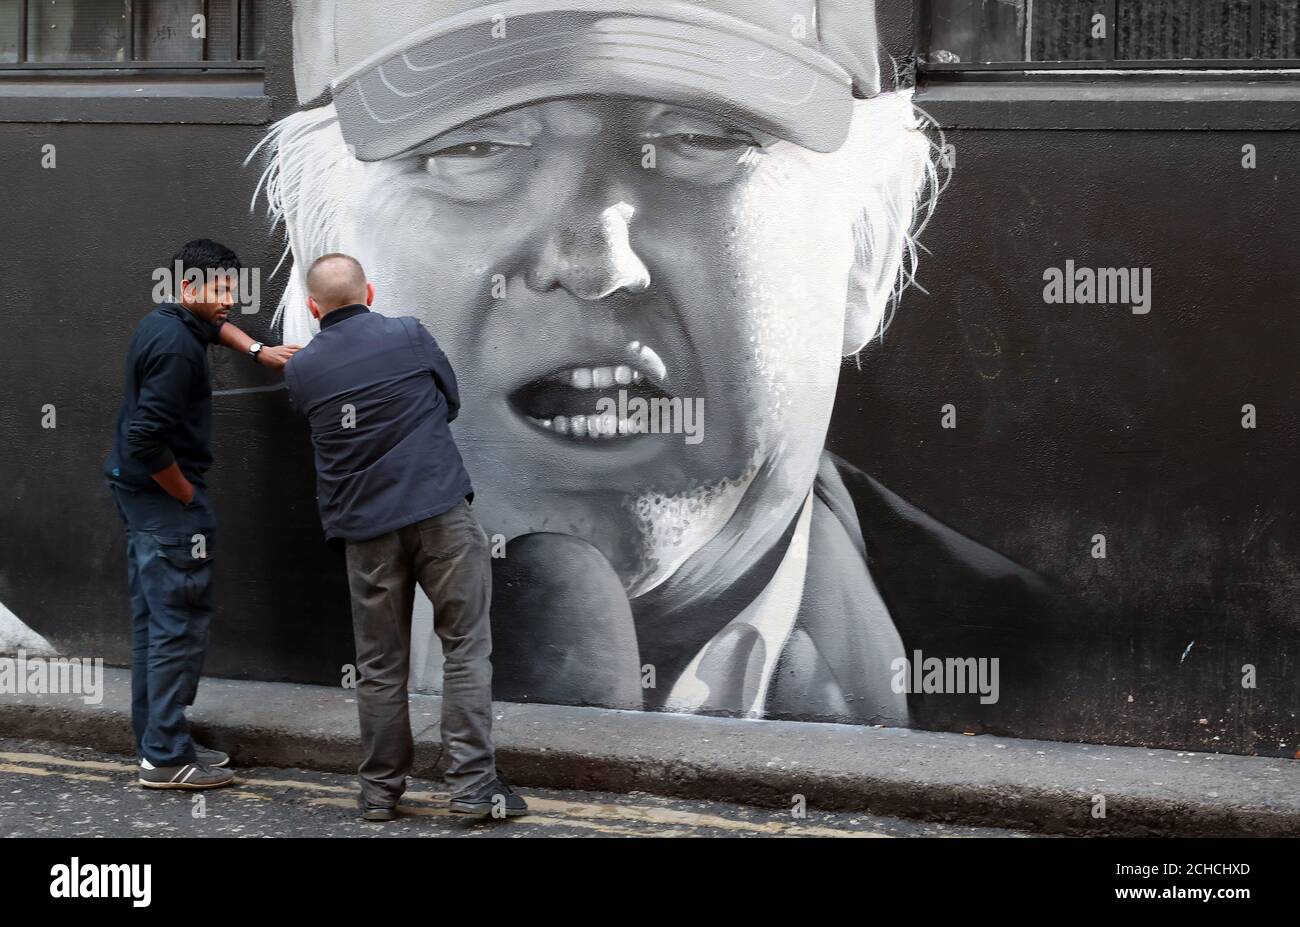 Les membres du public regarder une peinture murale du président américain Donald Trump dans le centre-ville de Dublin par l'artiste sous-ensemble. Banque D'Images